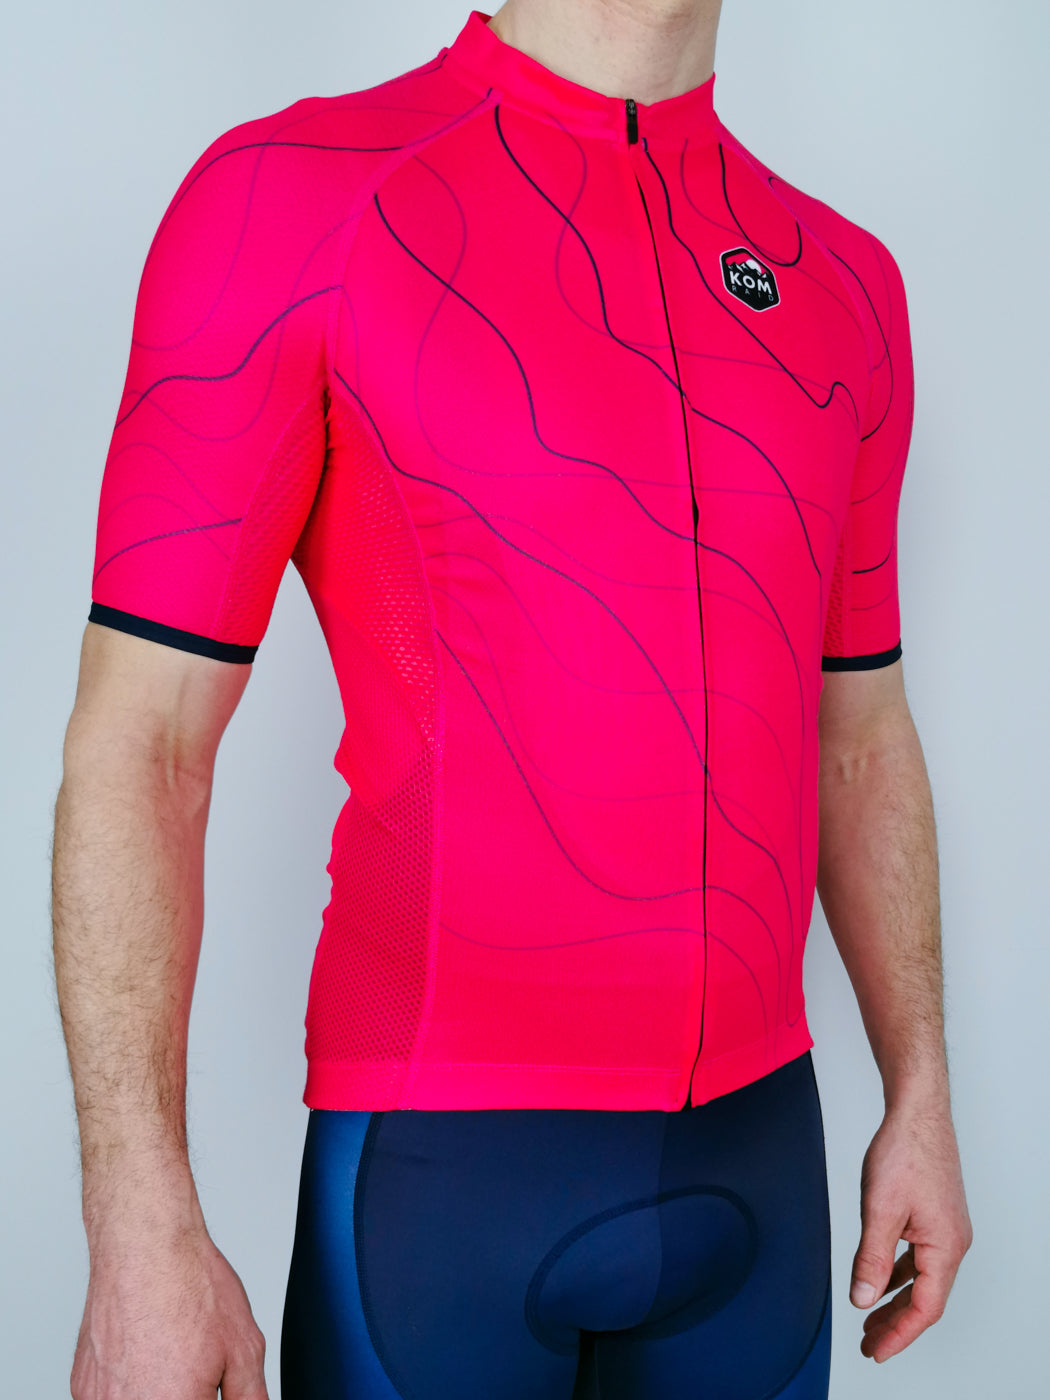 Cancano 'Tramonto' Pink Switch Jersey